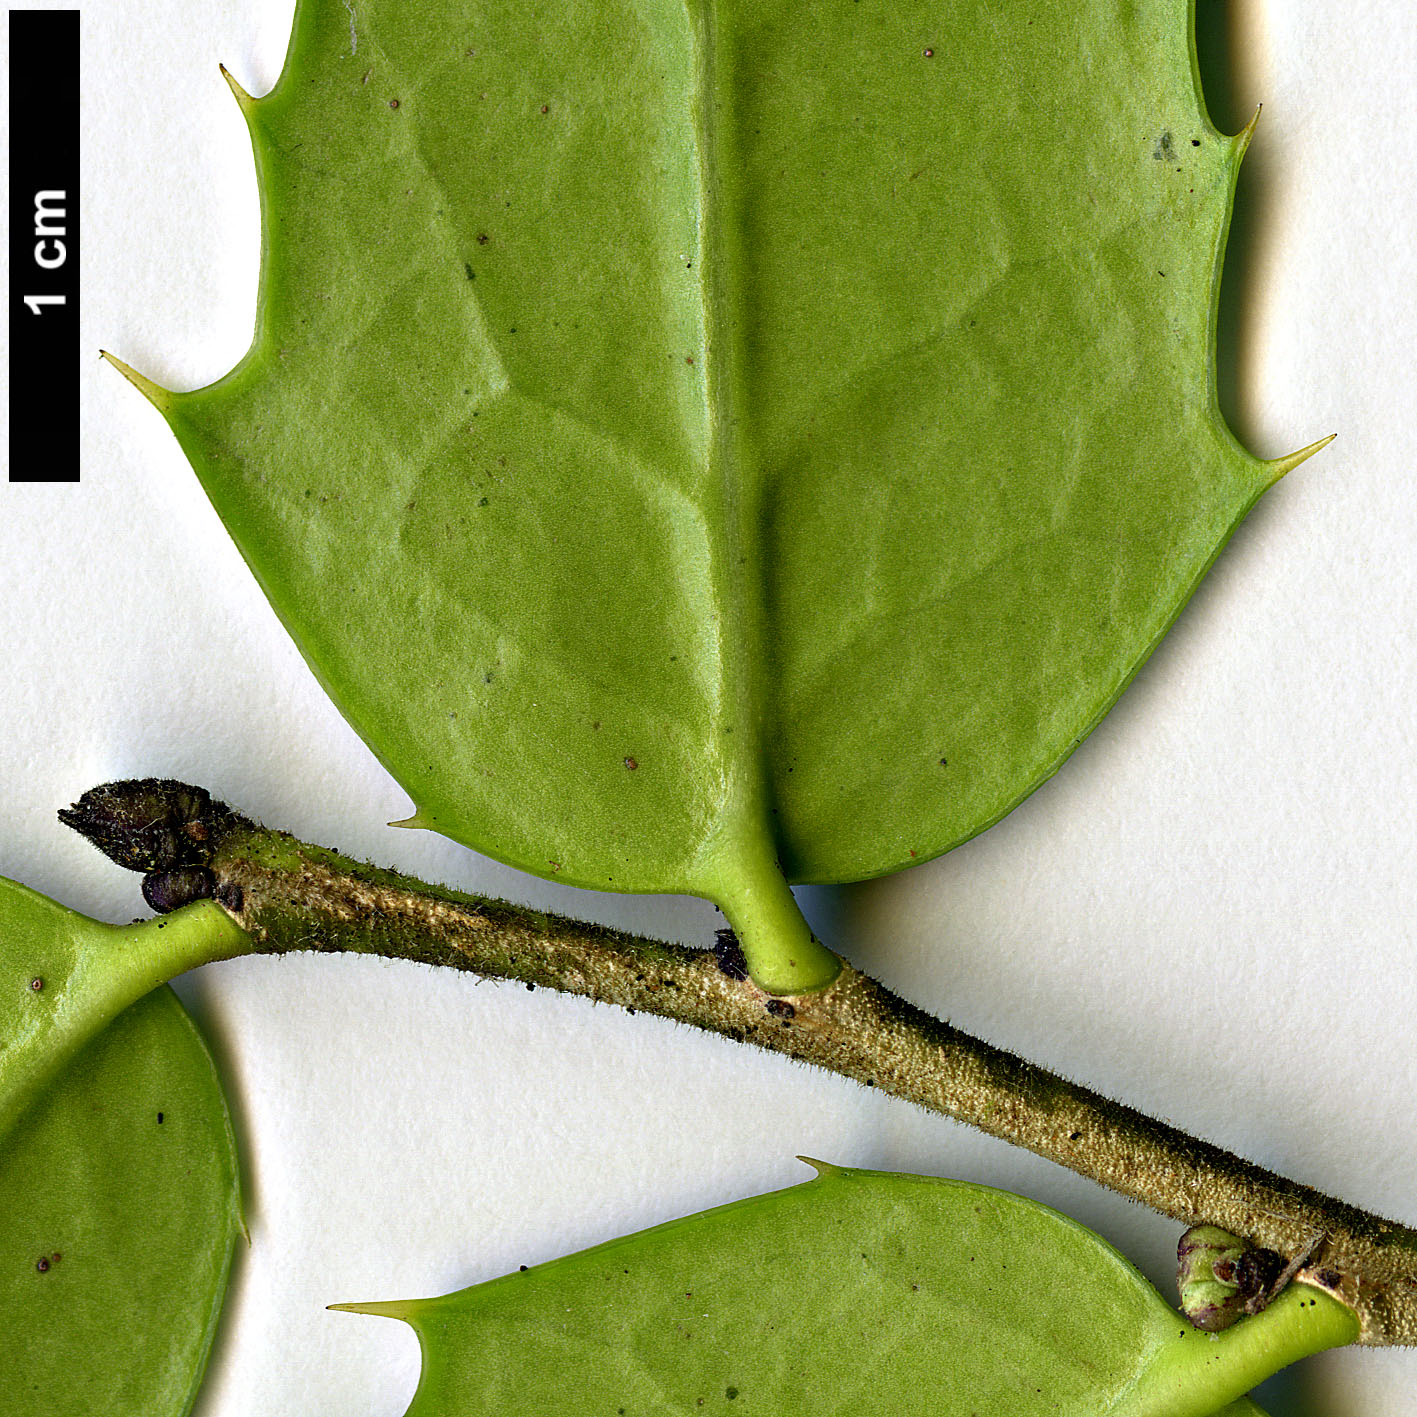 High resolution image: Family: Aquifoliaceae - Genus: Ilex - Taxon: bioritsensis